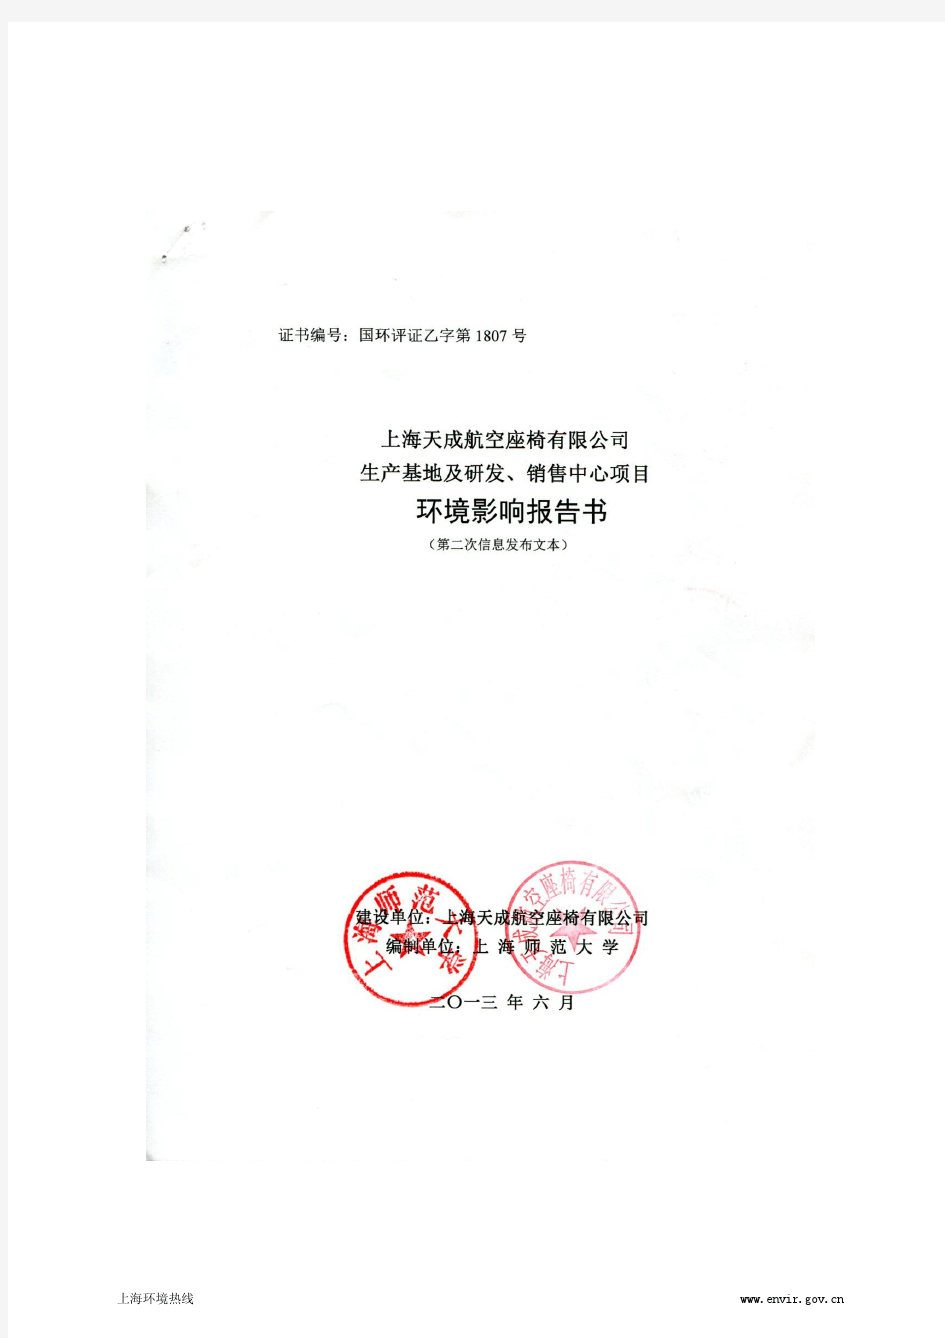 201306-上海天成航空座椅有限公司生产基地及研发、销售中心项目环境影响评价第二次公示